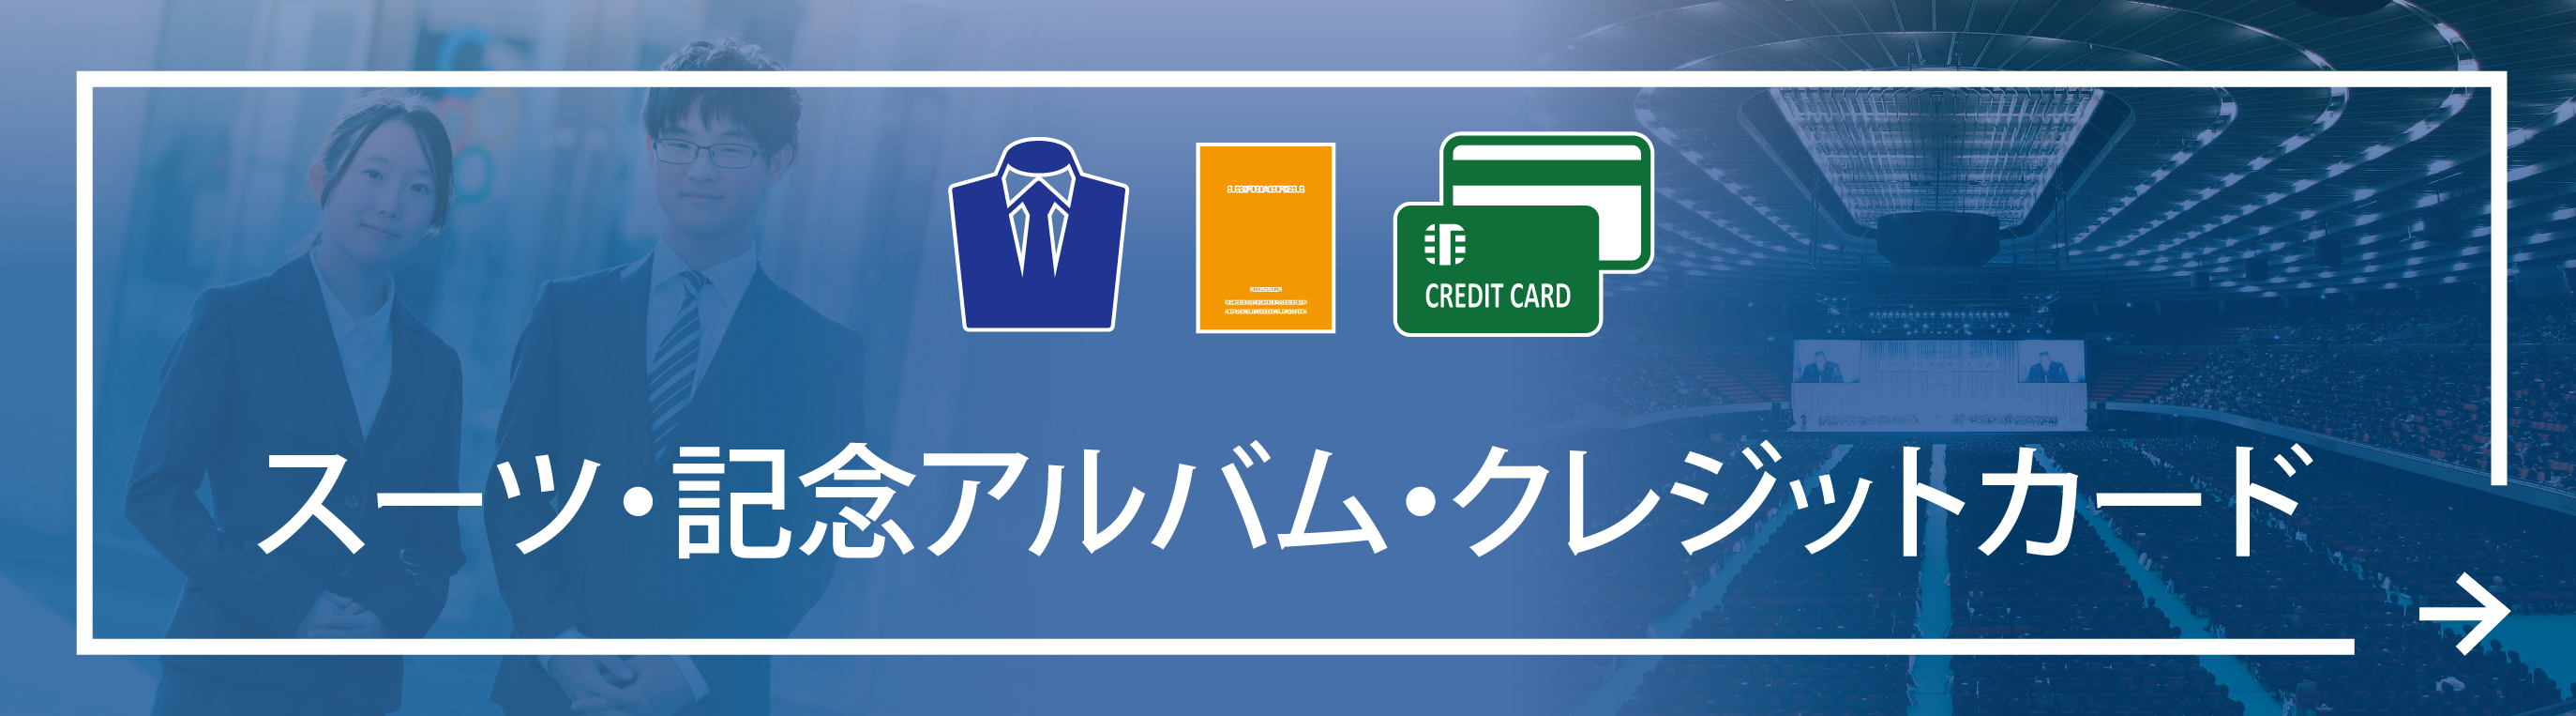 スーツ・記念アルバム・クレジットカード